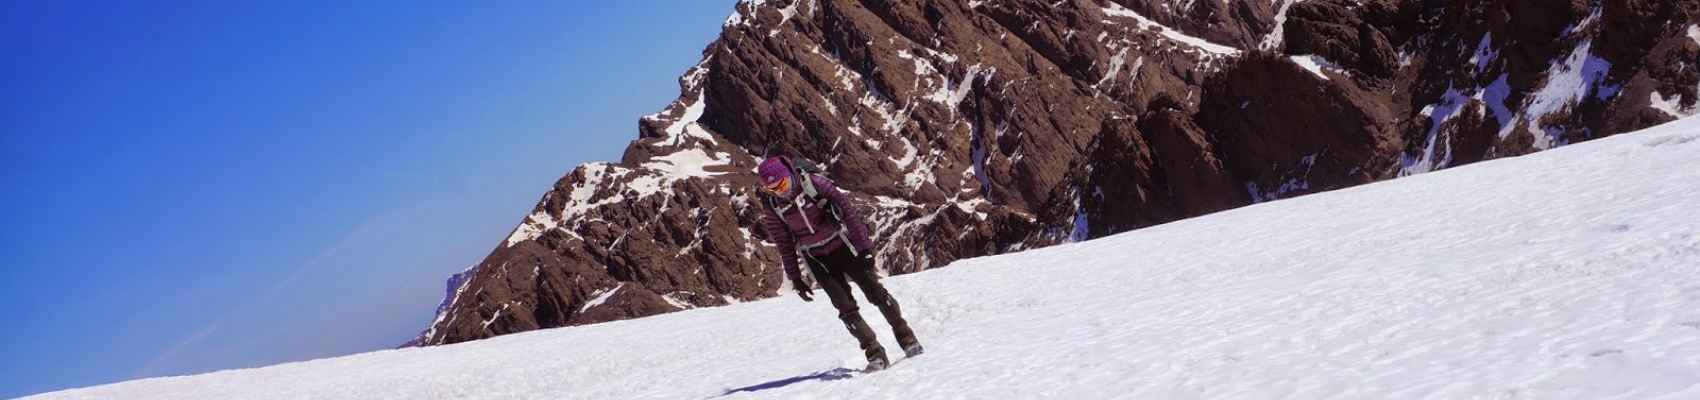 Ski in Toubkal & Morocco atlas mountains - 5 Days